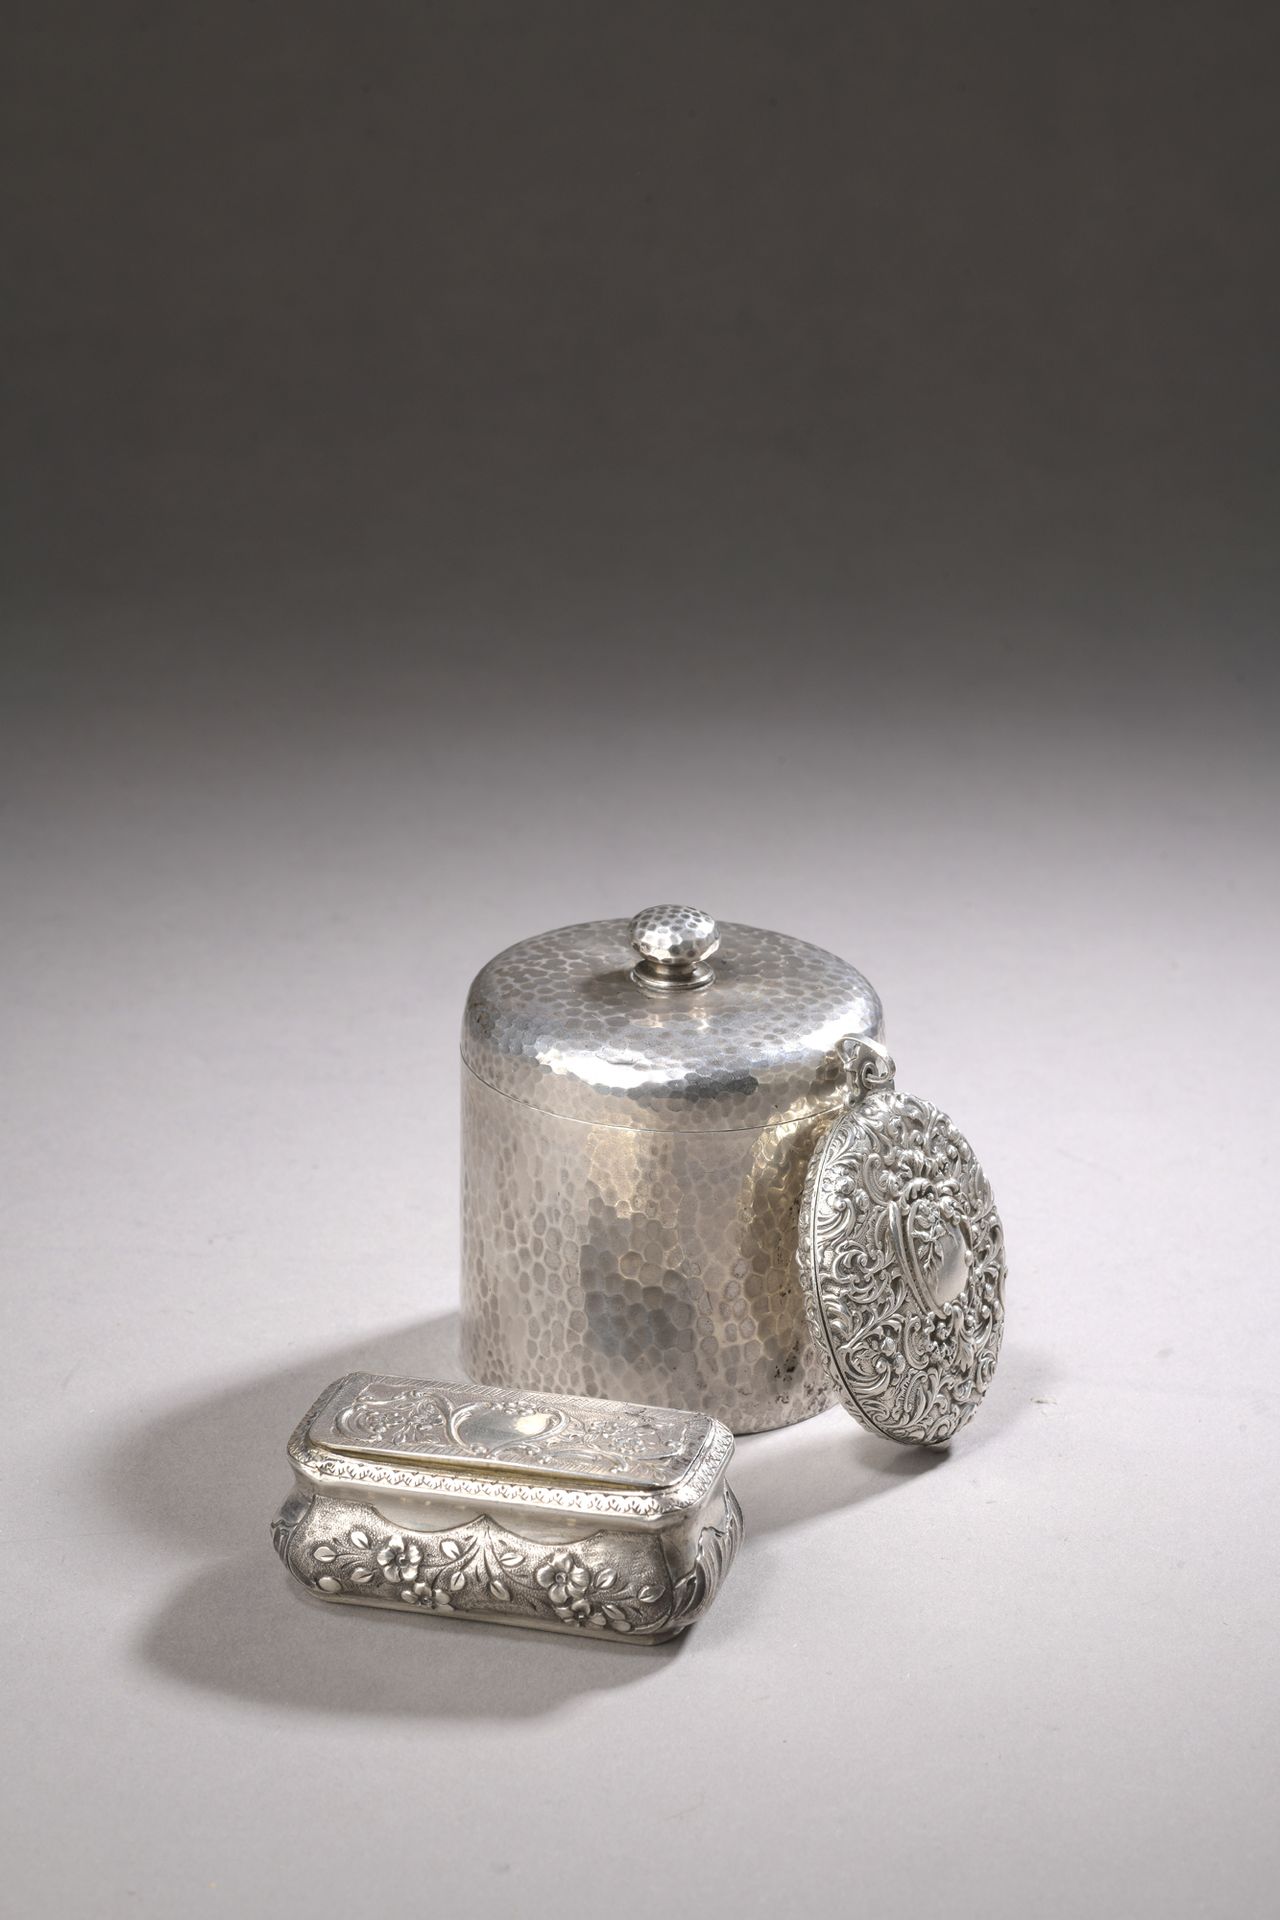 Null 一个银质茶盒，第2个标题为800‰，圆柱形，锤击而成。附有一个银质鼻烟盒，标题为950‰玑镂，以及一个银质吊坠，标题为950‰，上面有卷轴。

毛重2&hellip;